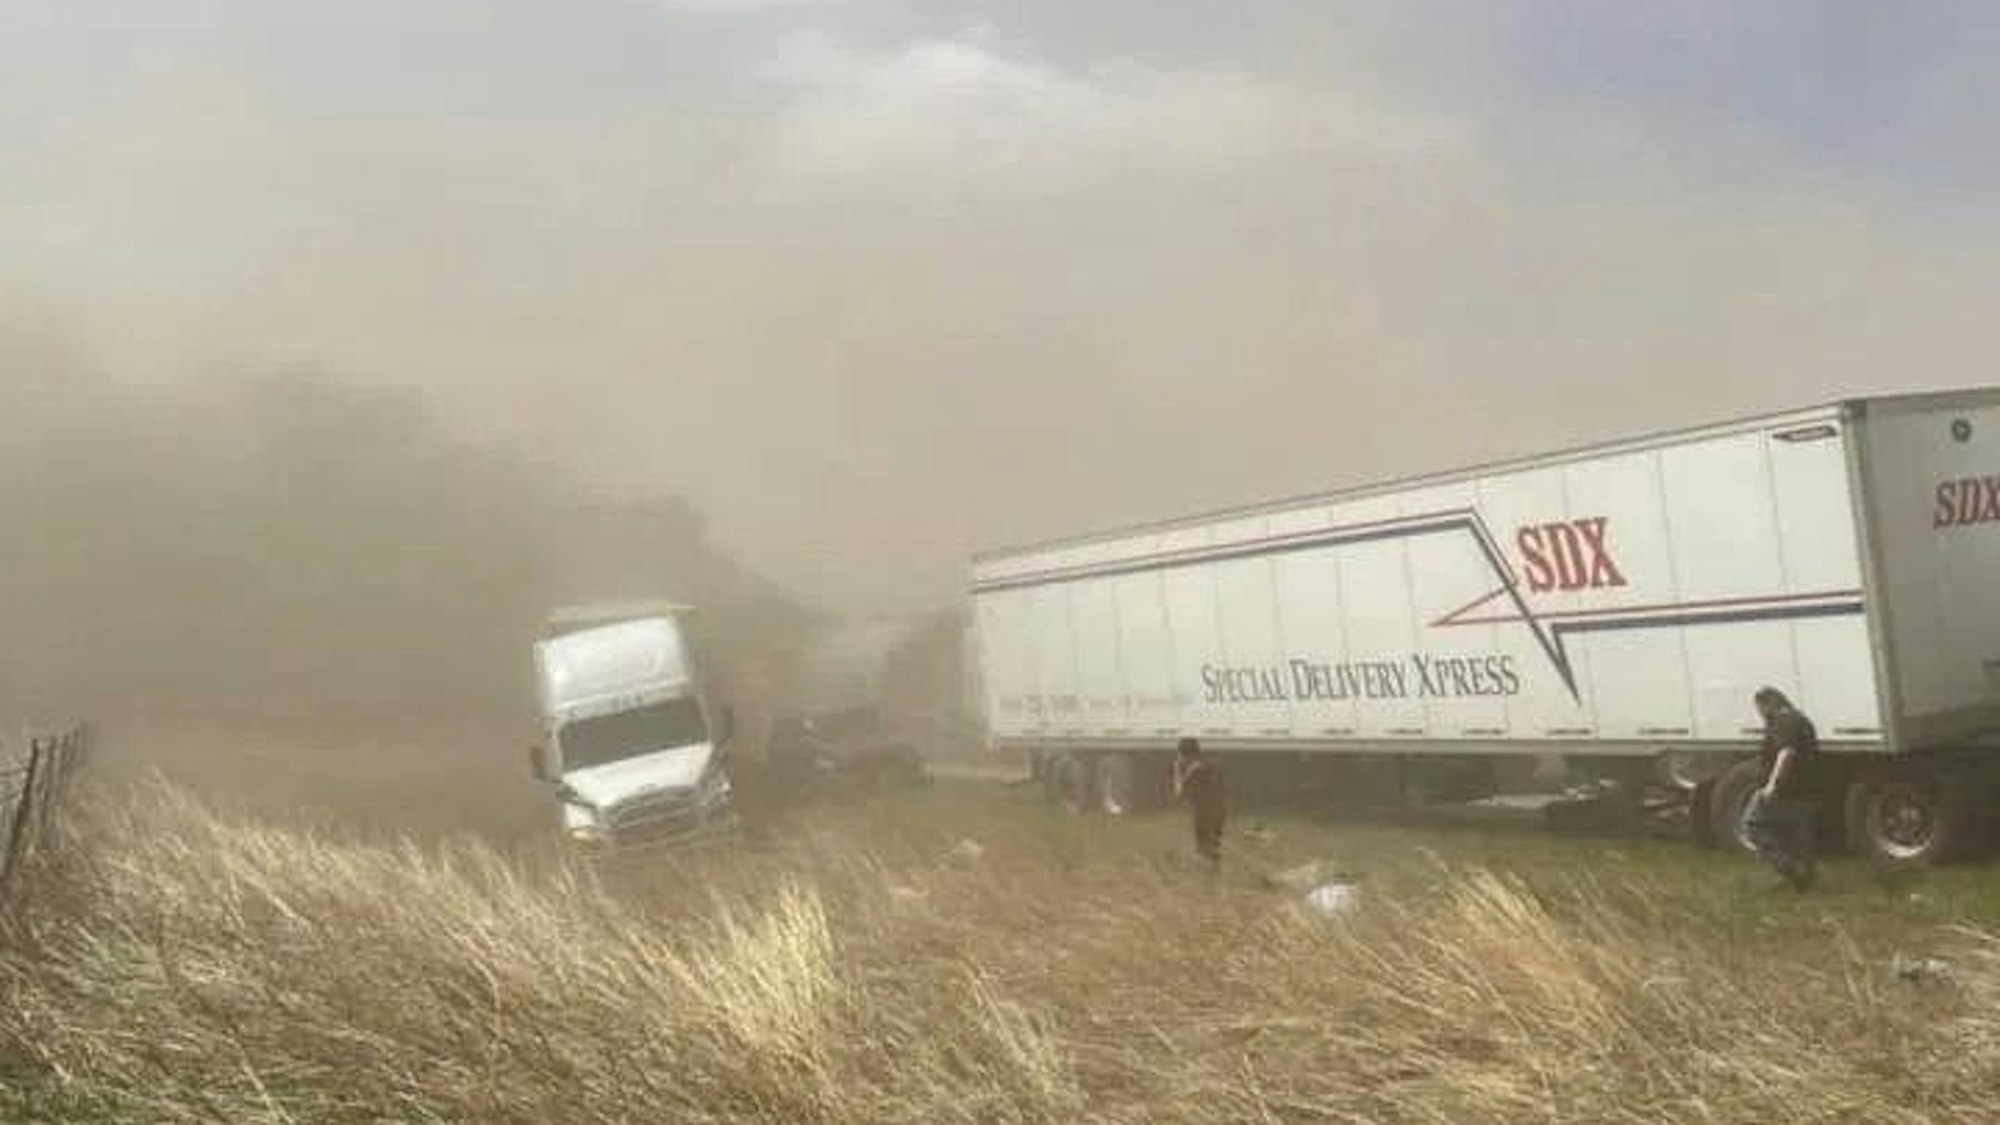 Lastwagen stehen nach einem Unfall an der Interstate 55. Ein schwerer Sandsturm hat auf einer Fernstraße im US-Bundesstaat Illinois zahlreiche Unfälle ausgelöst, bei denen mehrere Menschen ums Leben gekommen sind.